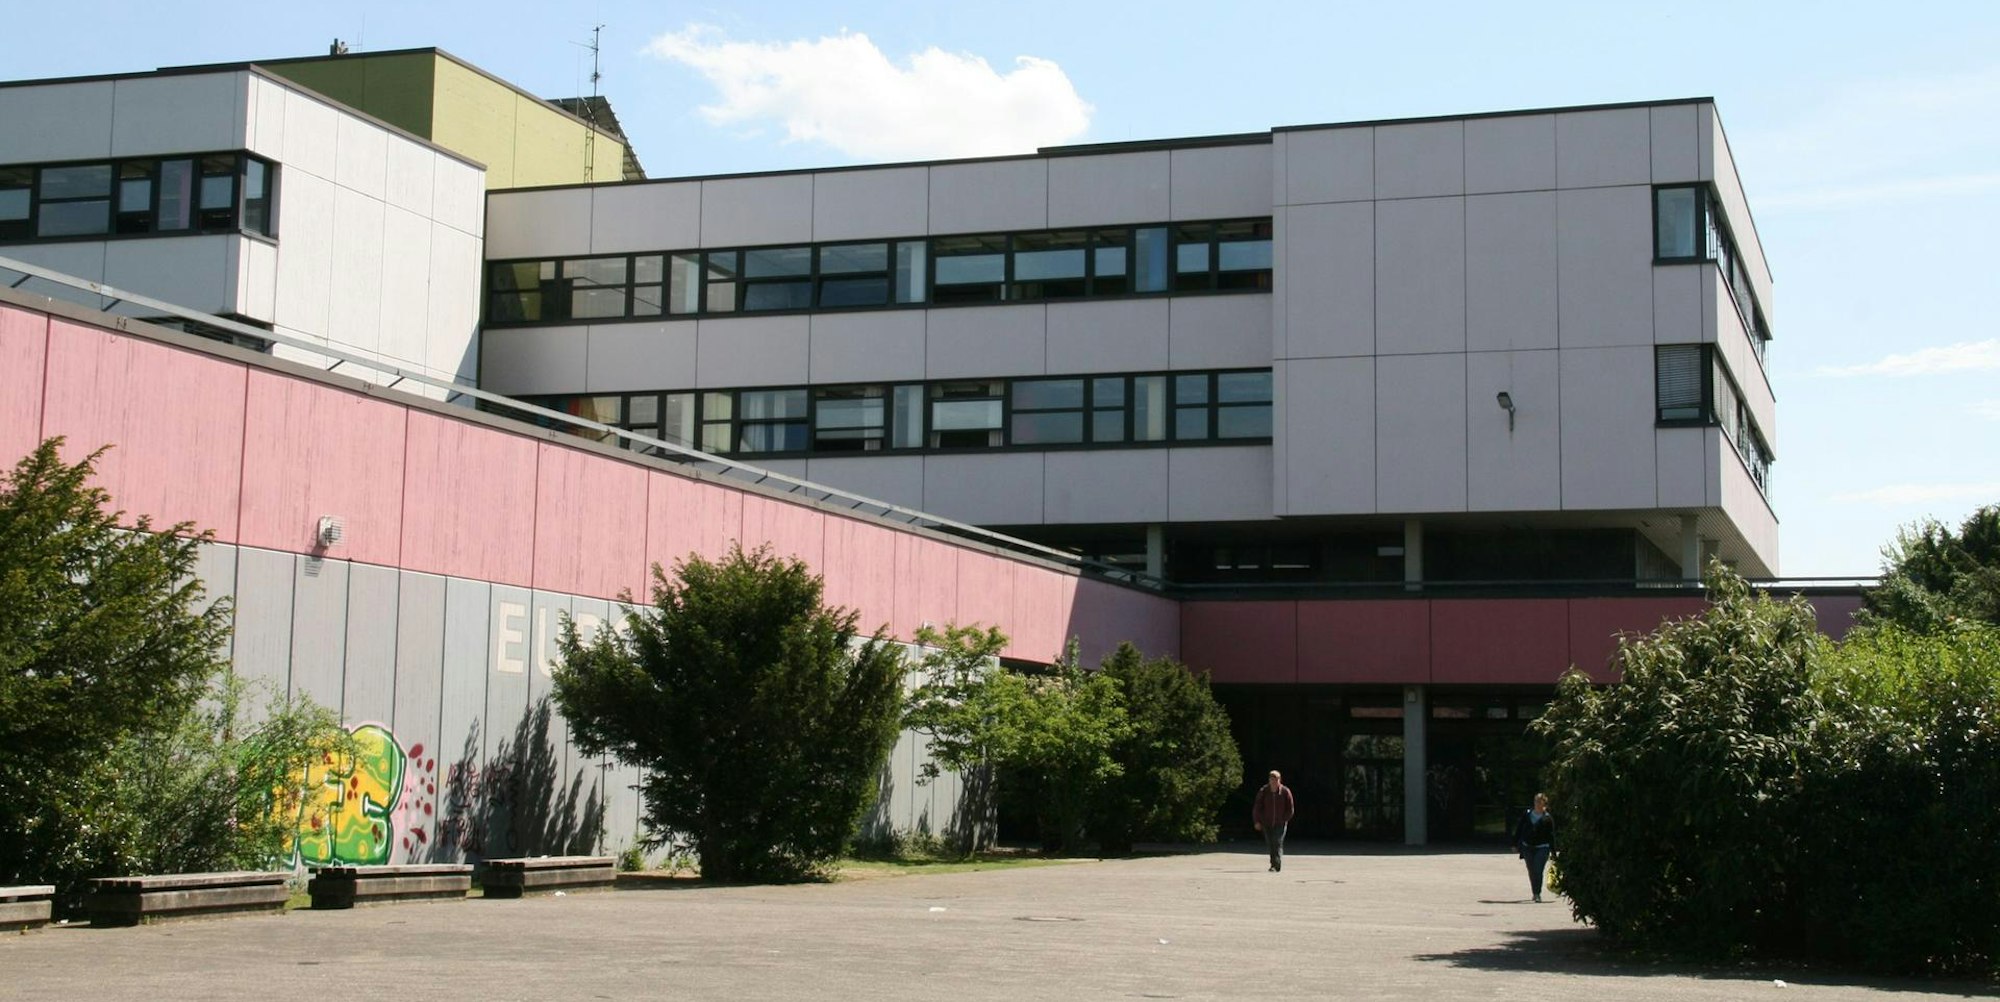 Europaschule Zollstock 030219